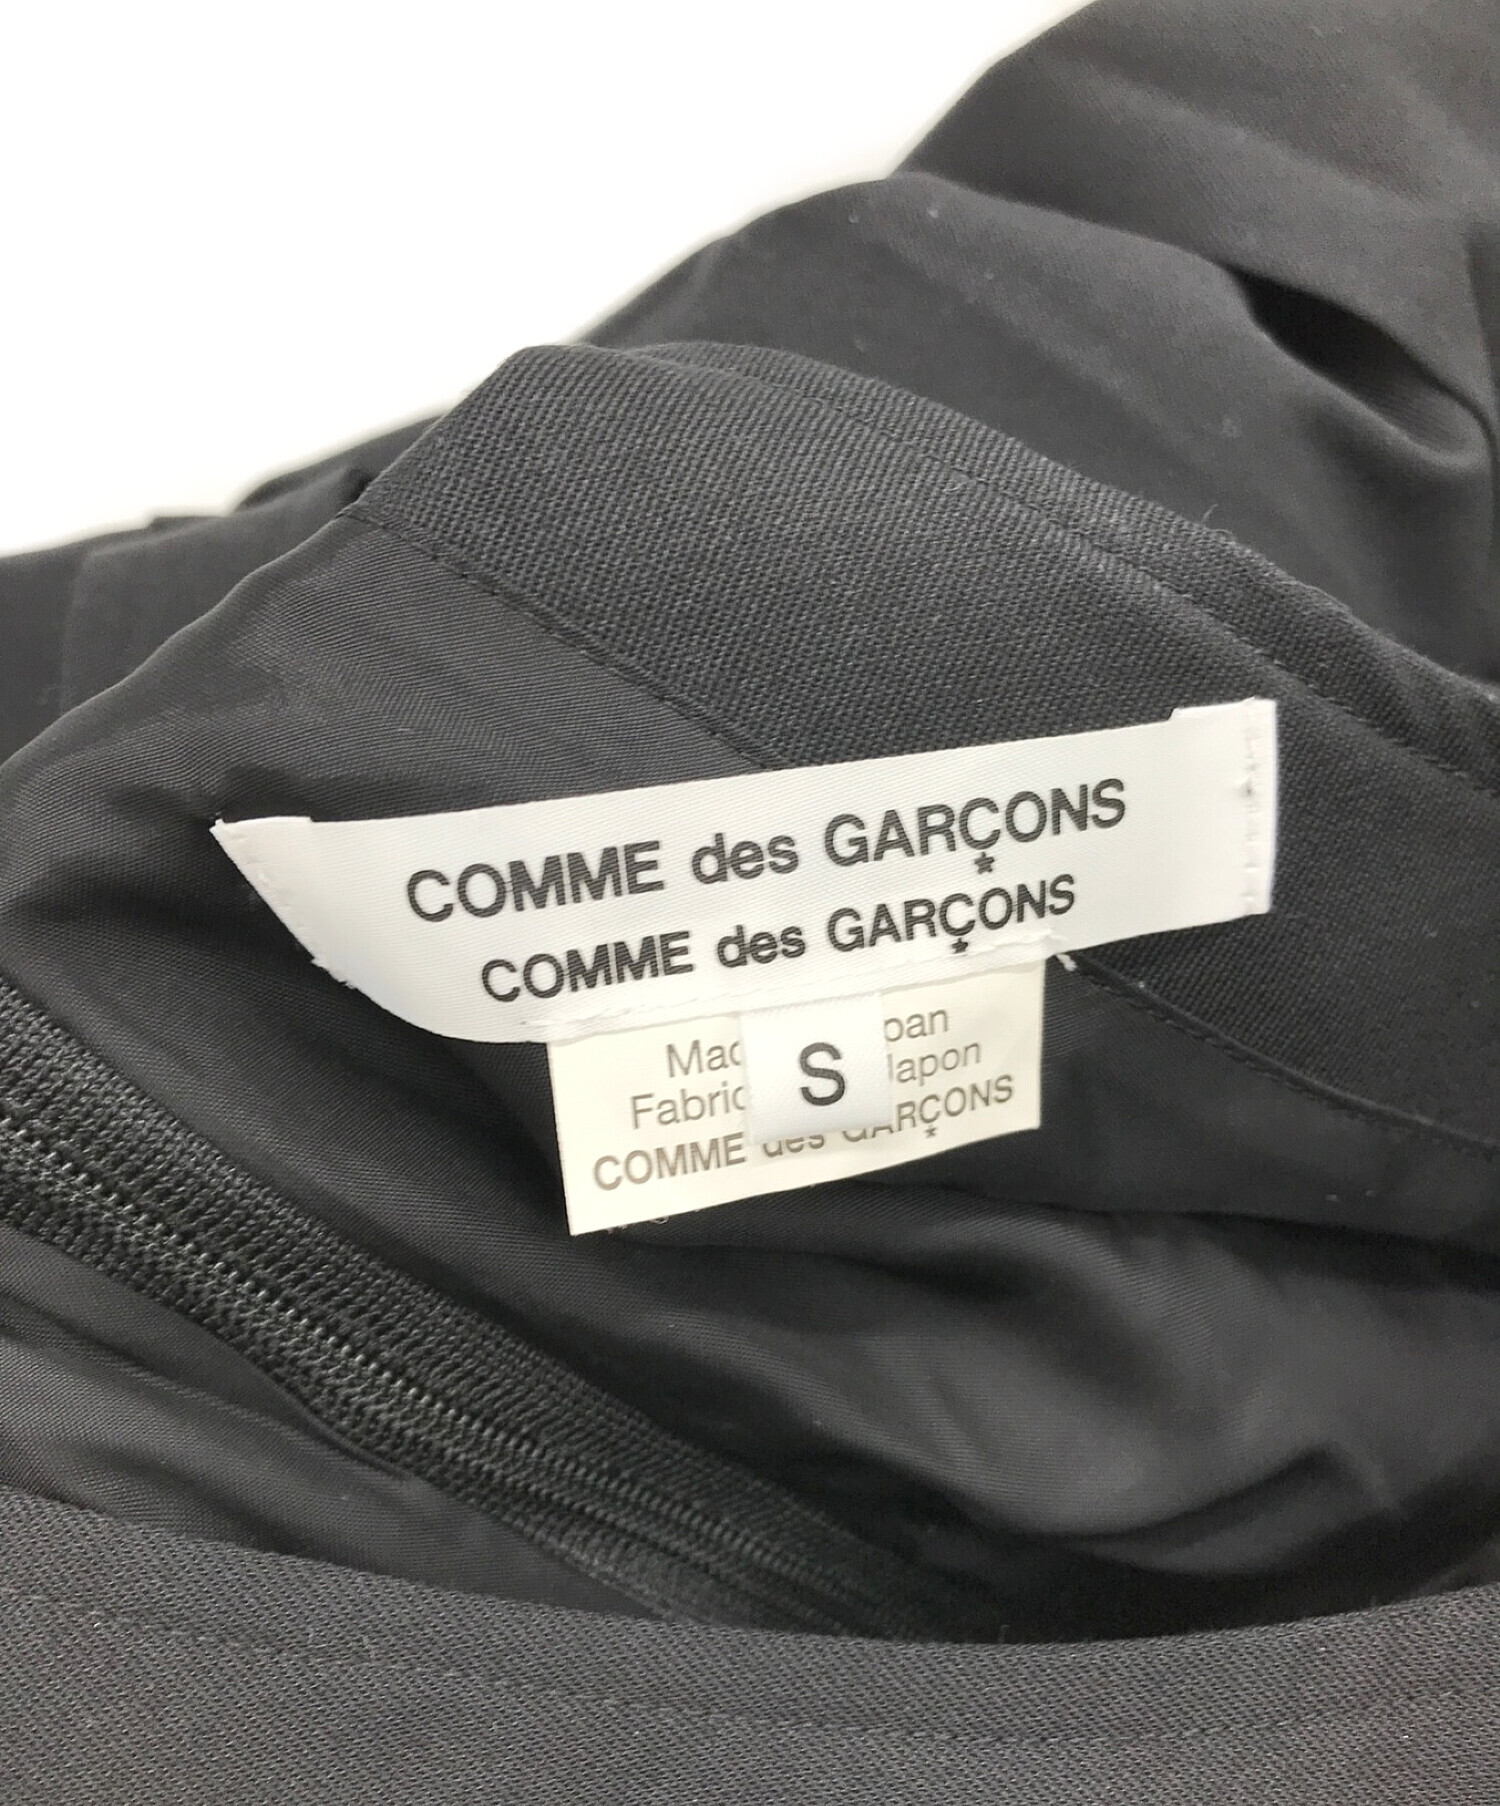 COMME des GARCONS COMME des GARCONS (コムデギャルソン コムデギャルソン) プリーツ切替ジャンパースカート  ブラック サイズ:S